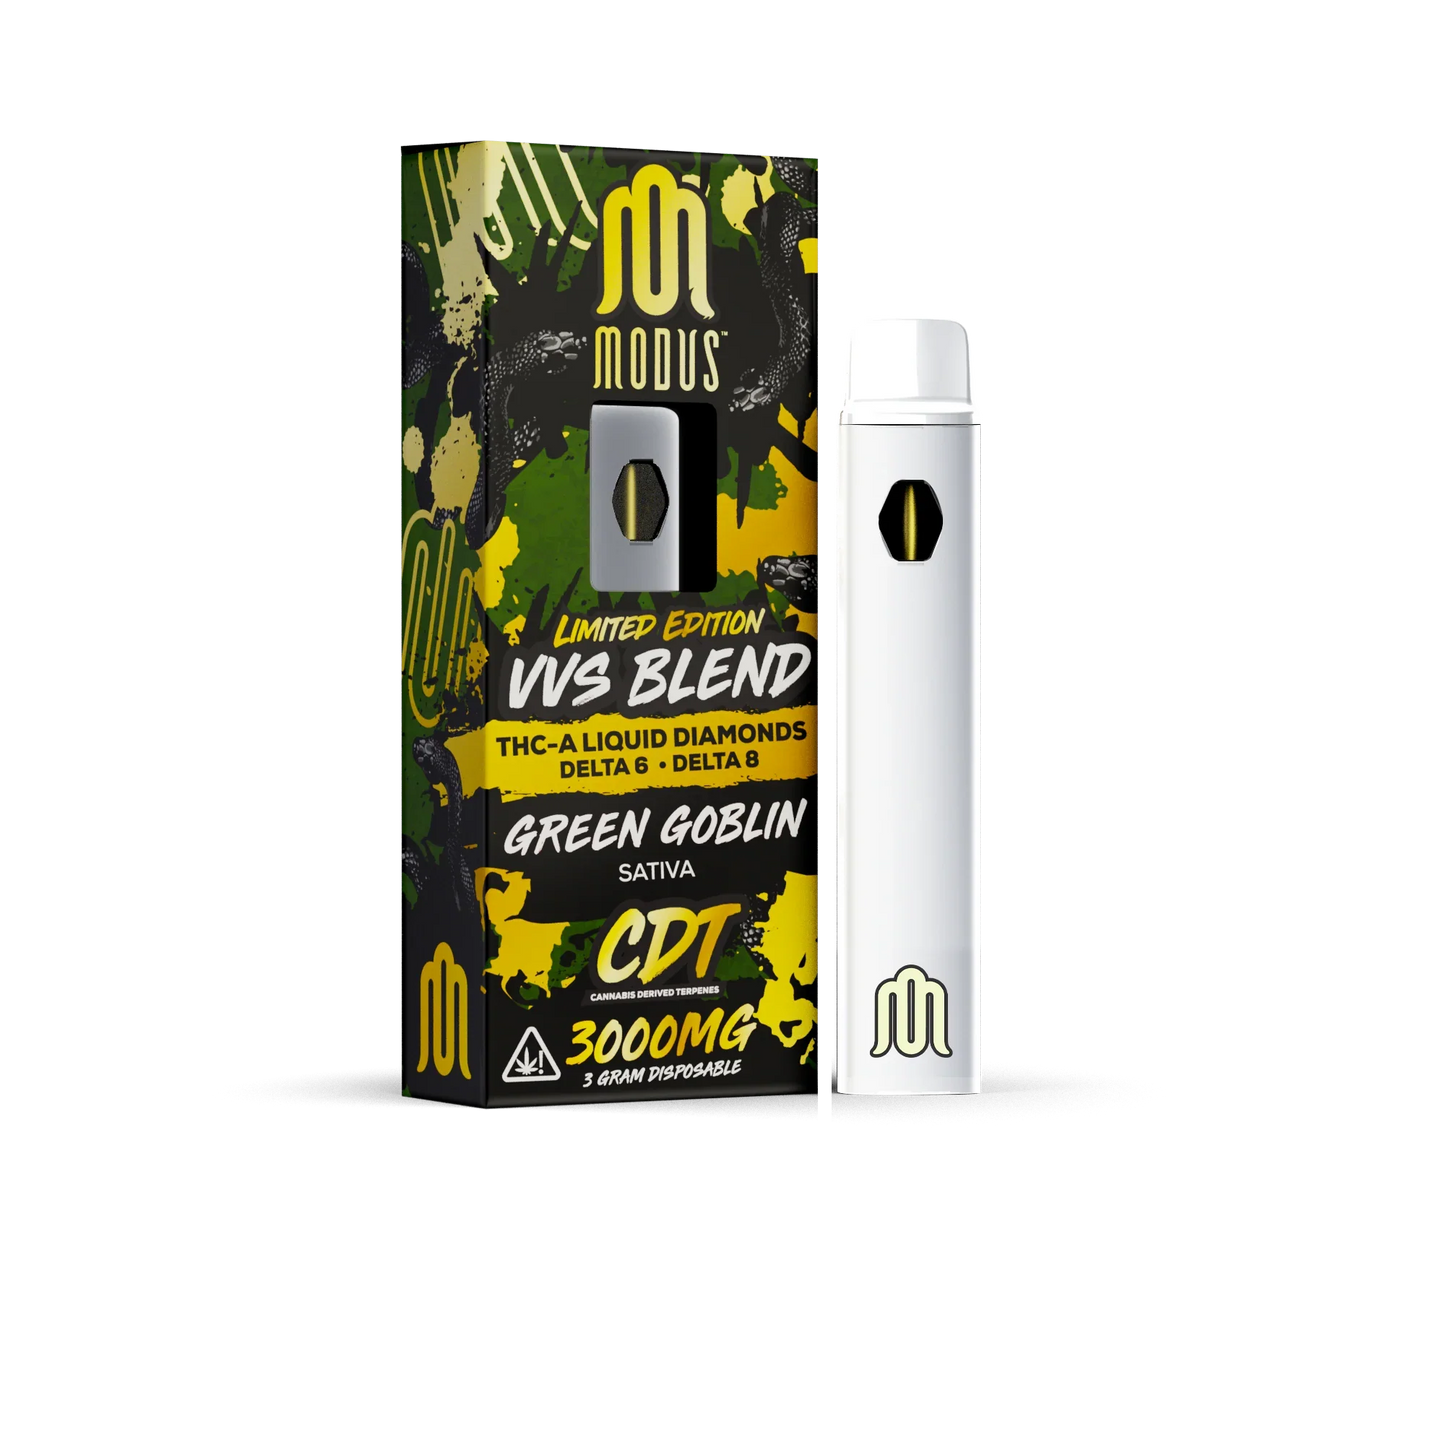 MODUS Limited Edition VVS Blend THC Disposable Vapes | 3G